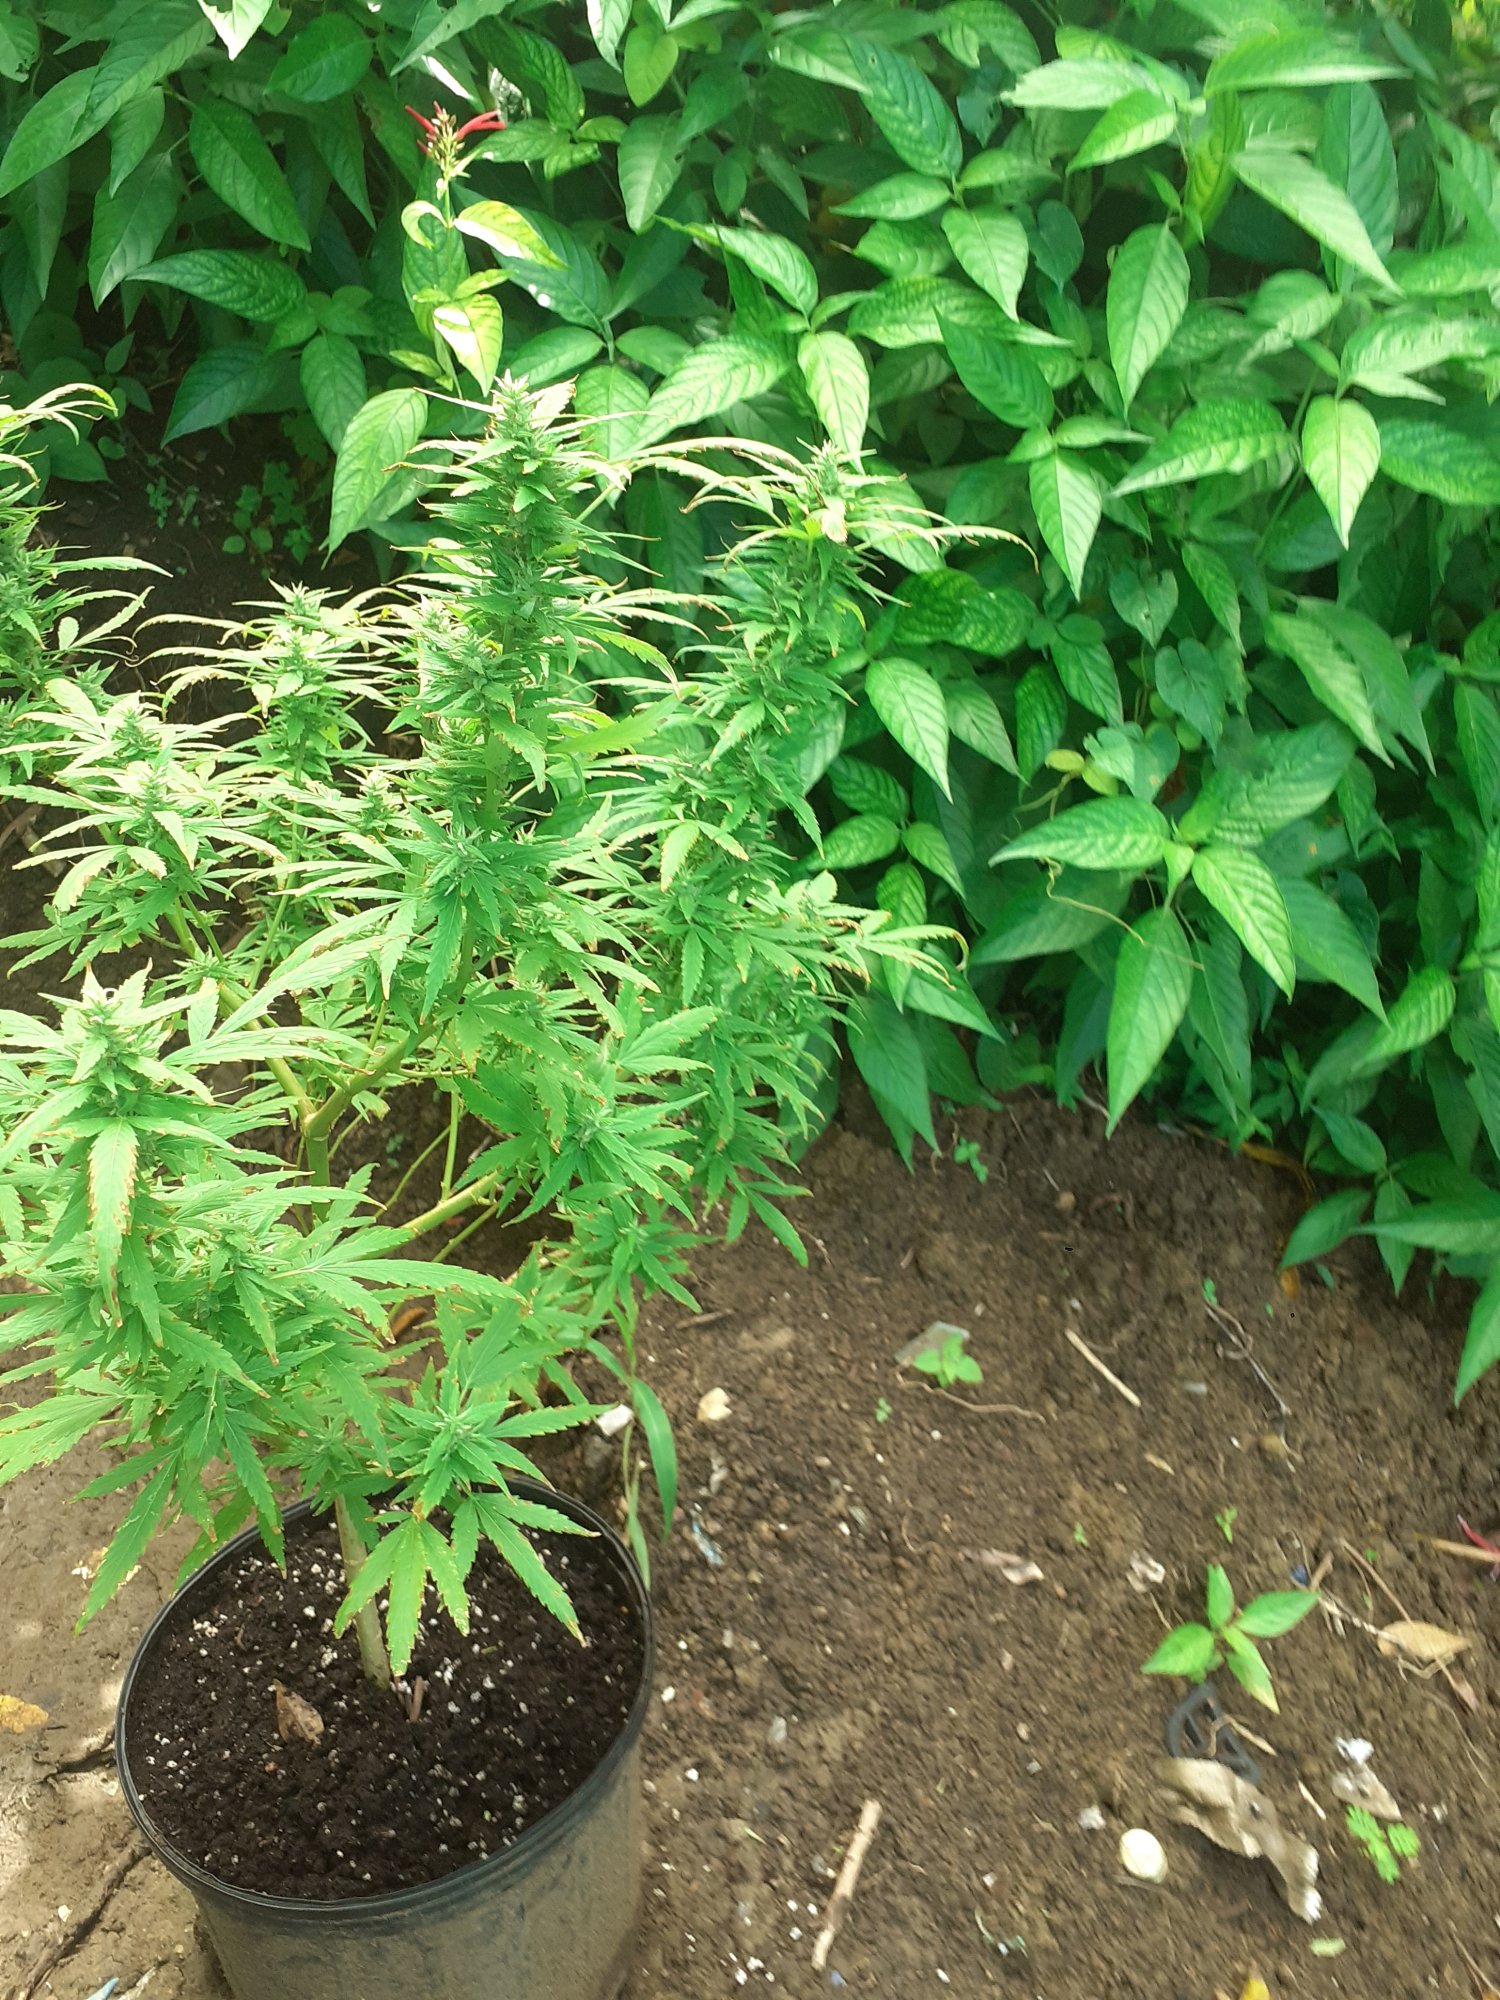 My first time growing marijuana 3